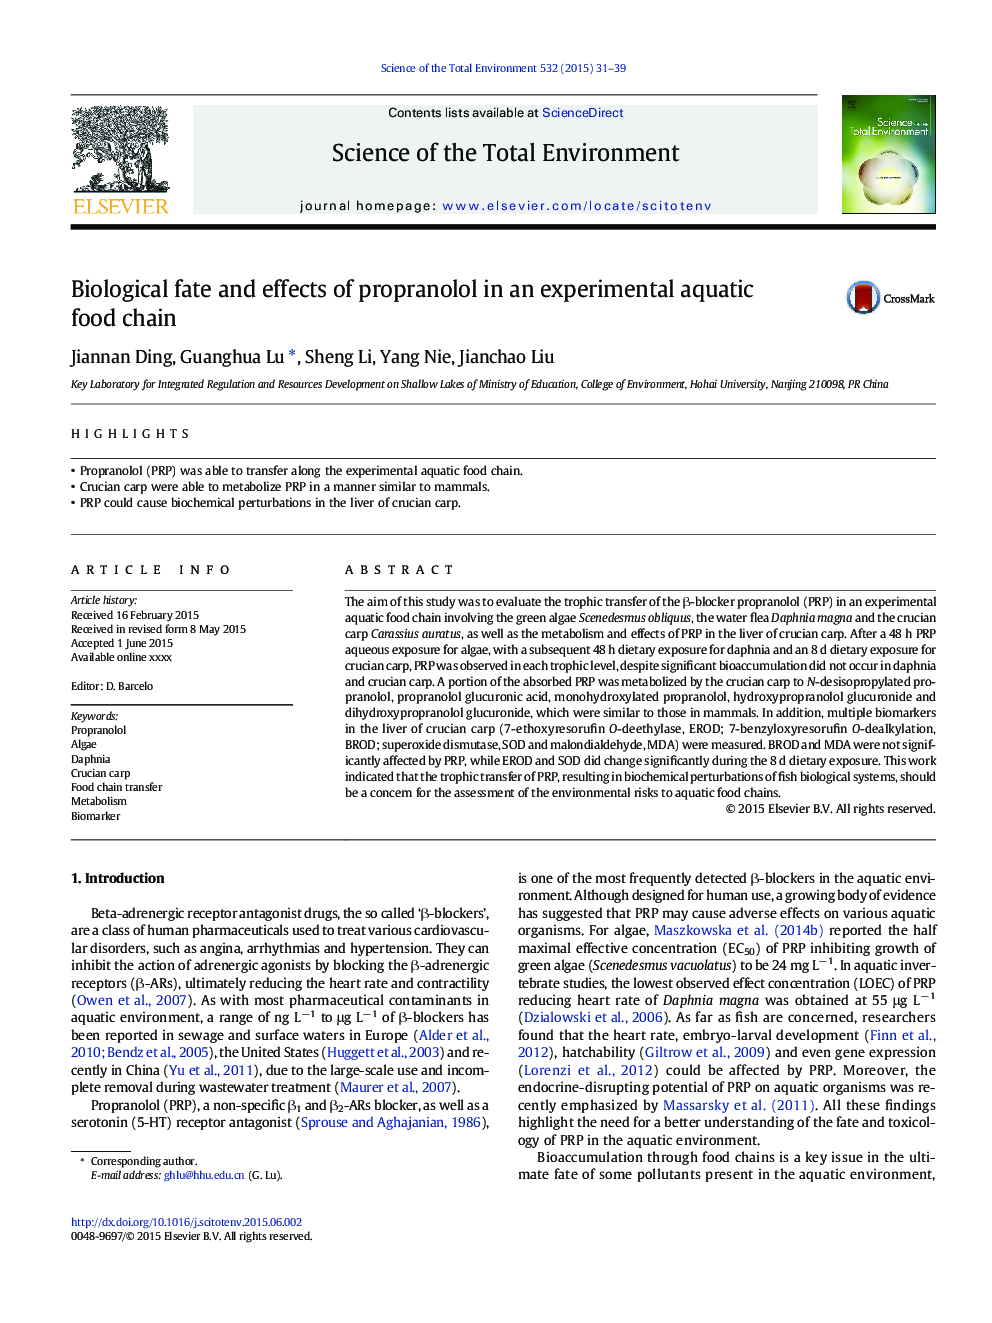 سرنوشت بیولوژیکی و اثرات پروپرانولول در یک زنجیره غذایی آزمایشی آبزی 